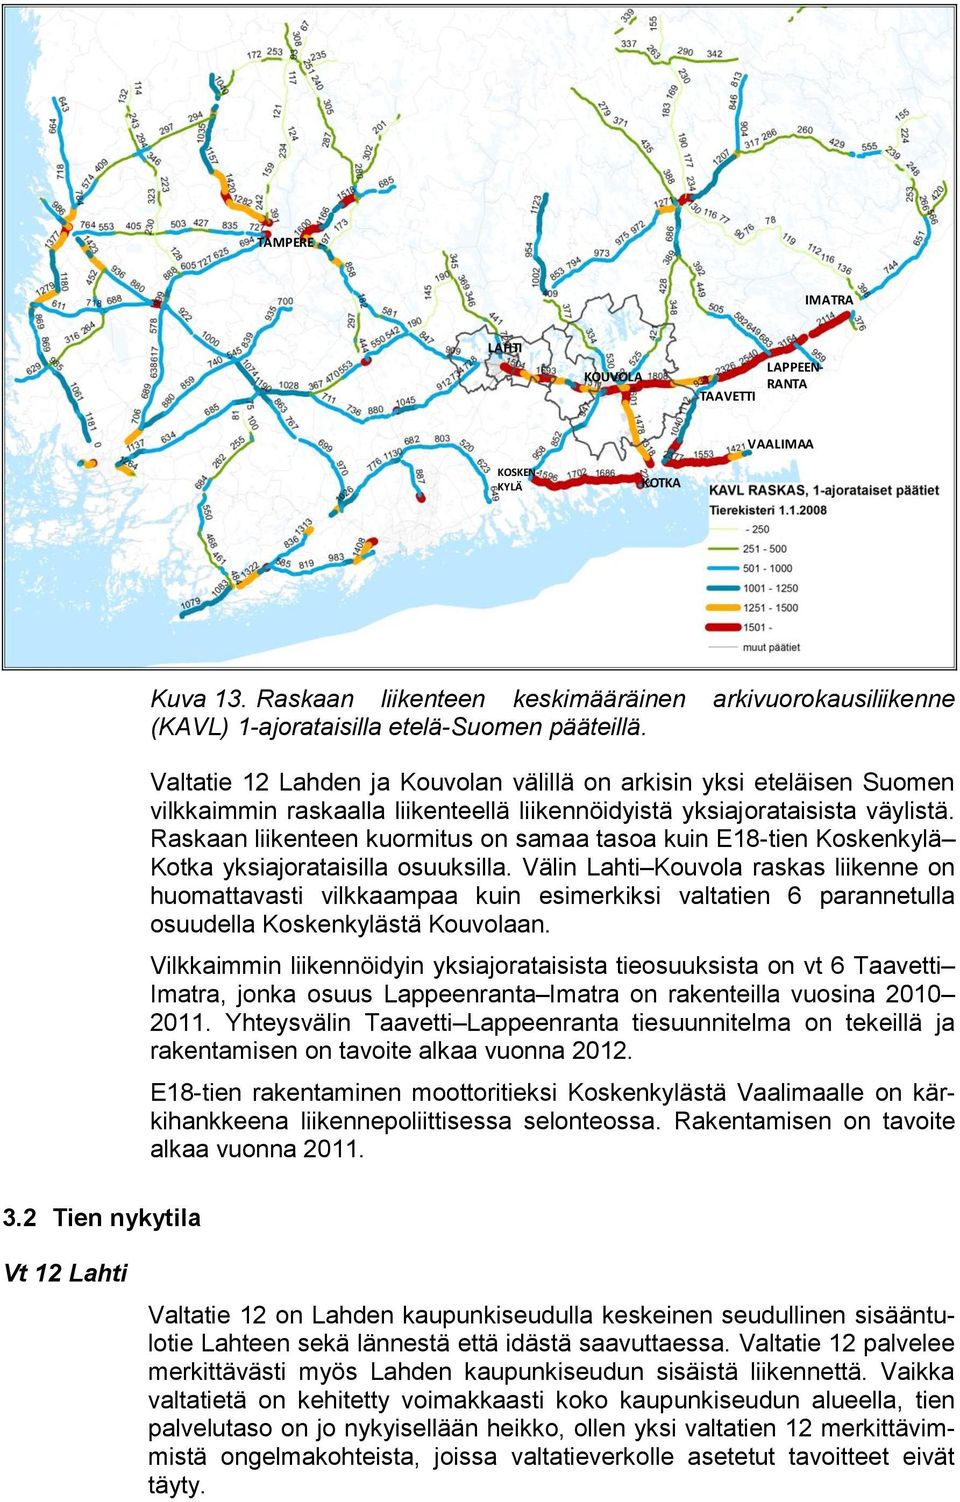 Valtatie 12 Lahden ja Kouvolan välillä on arkisin yksi eteläisen Suomen vilkkaimmin raskaalla liikenteellä liikennöidyistä yksiajorataisista väylistä.